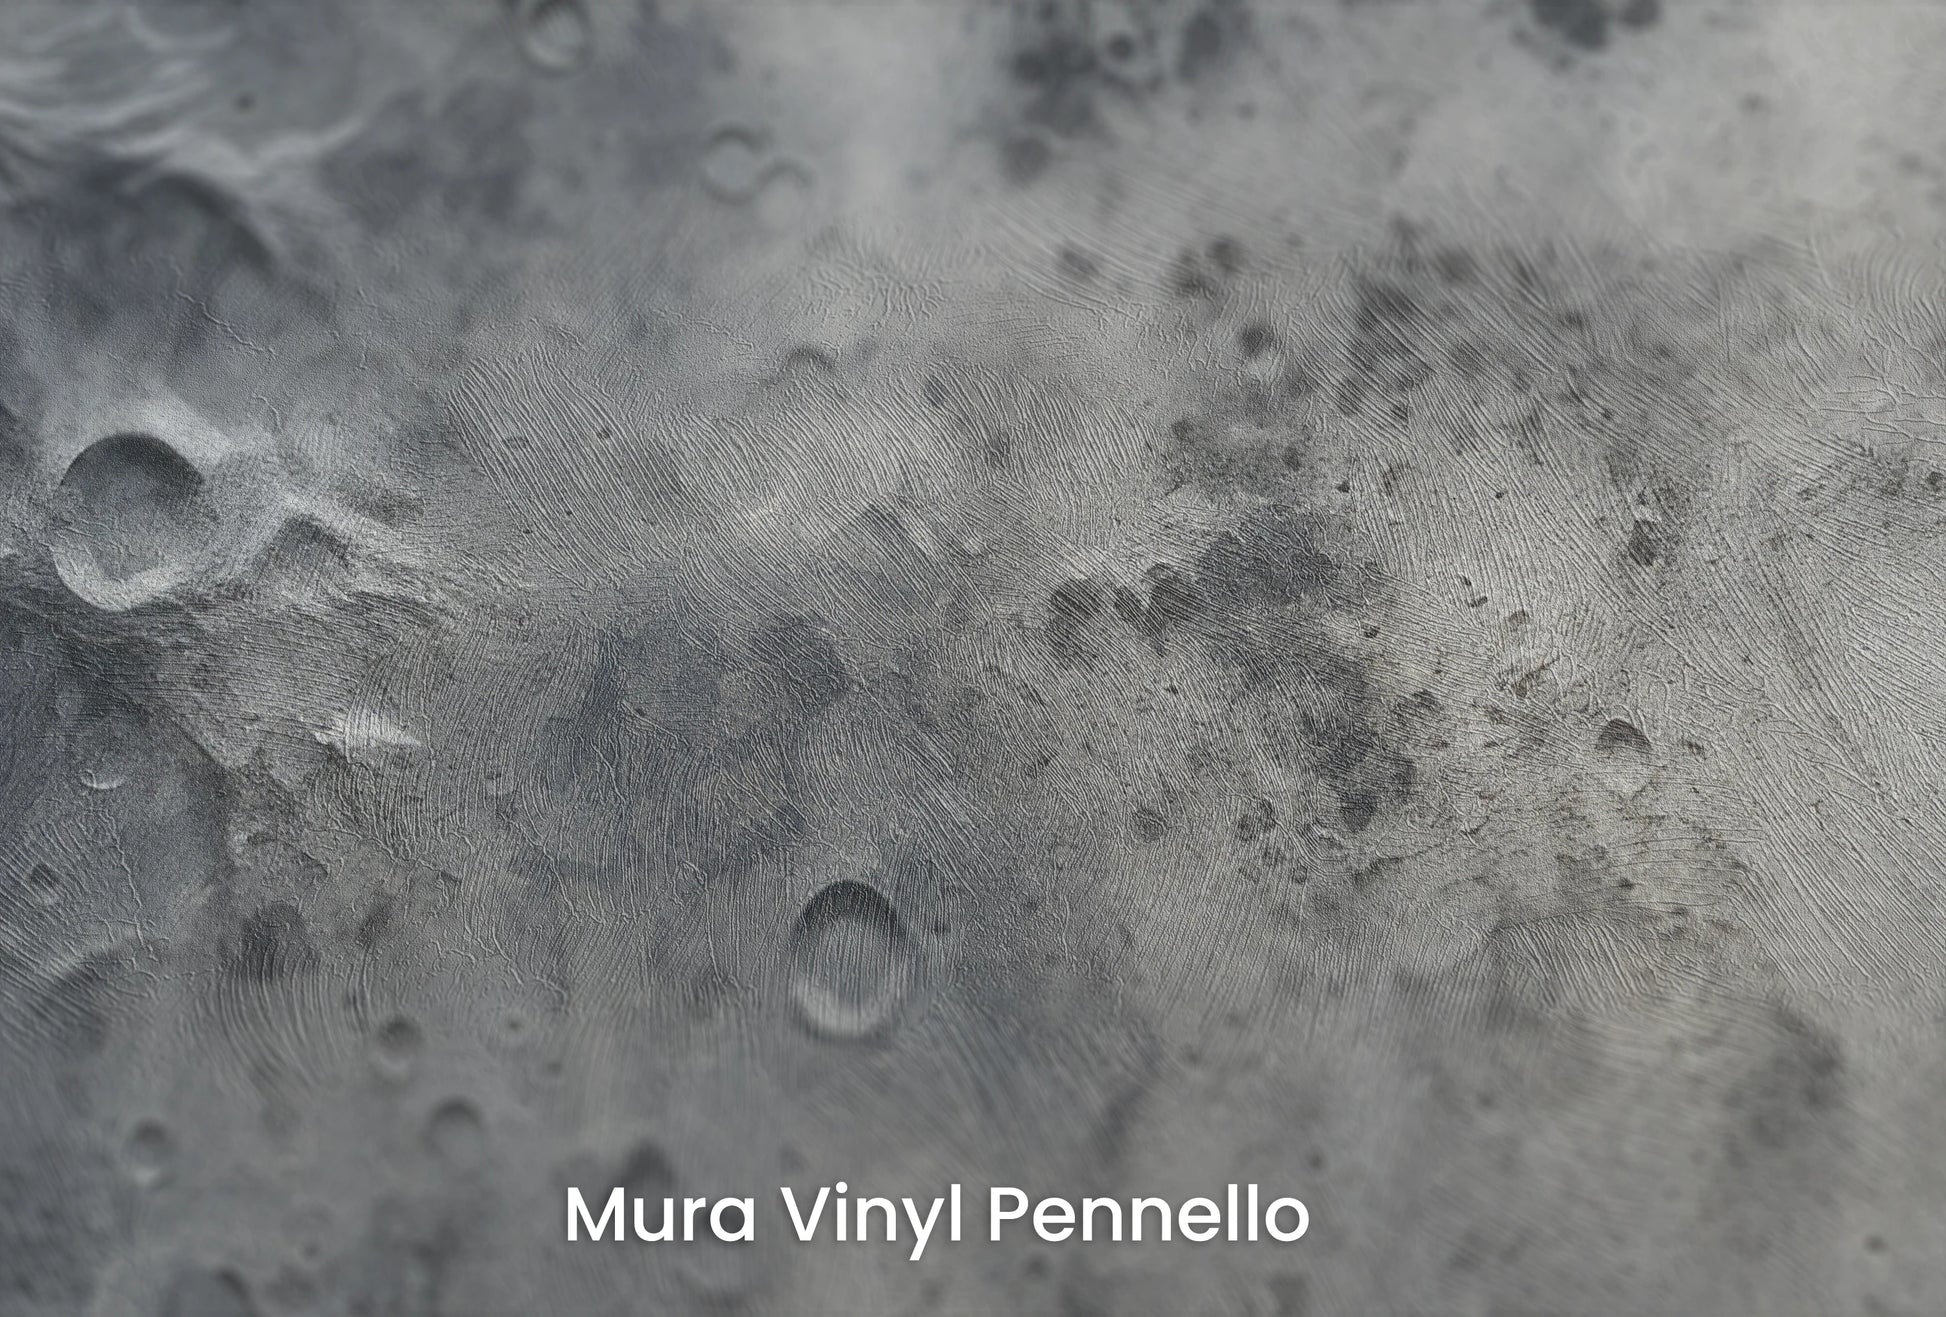 Zbliżenie na artystyczną fototapetę o nazwie Lunar Shadows na podłożu Mura Vinyl Pennello - faktura pociągnięć pędzla malarskiego.